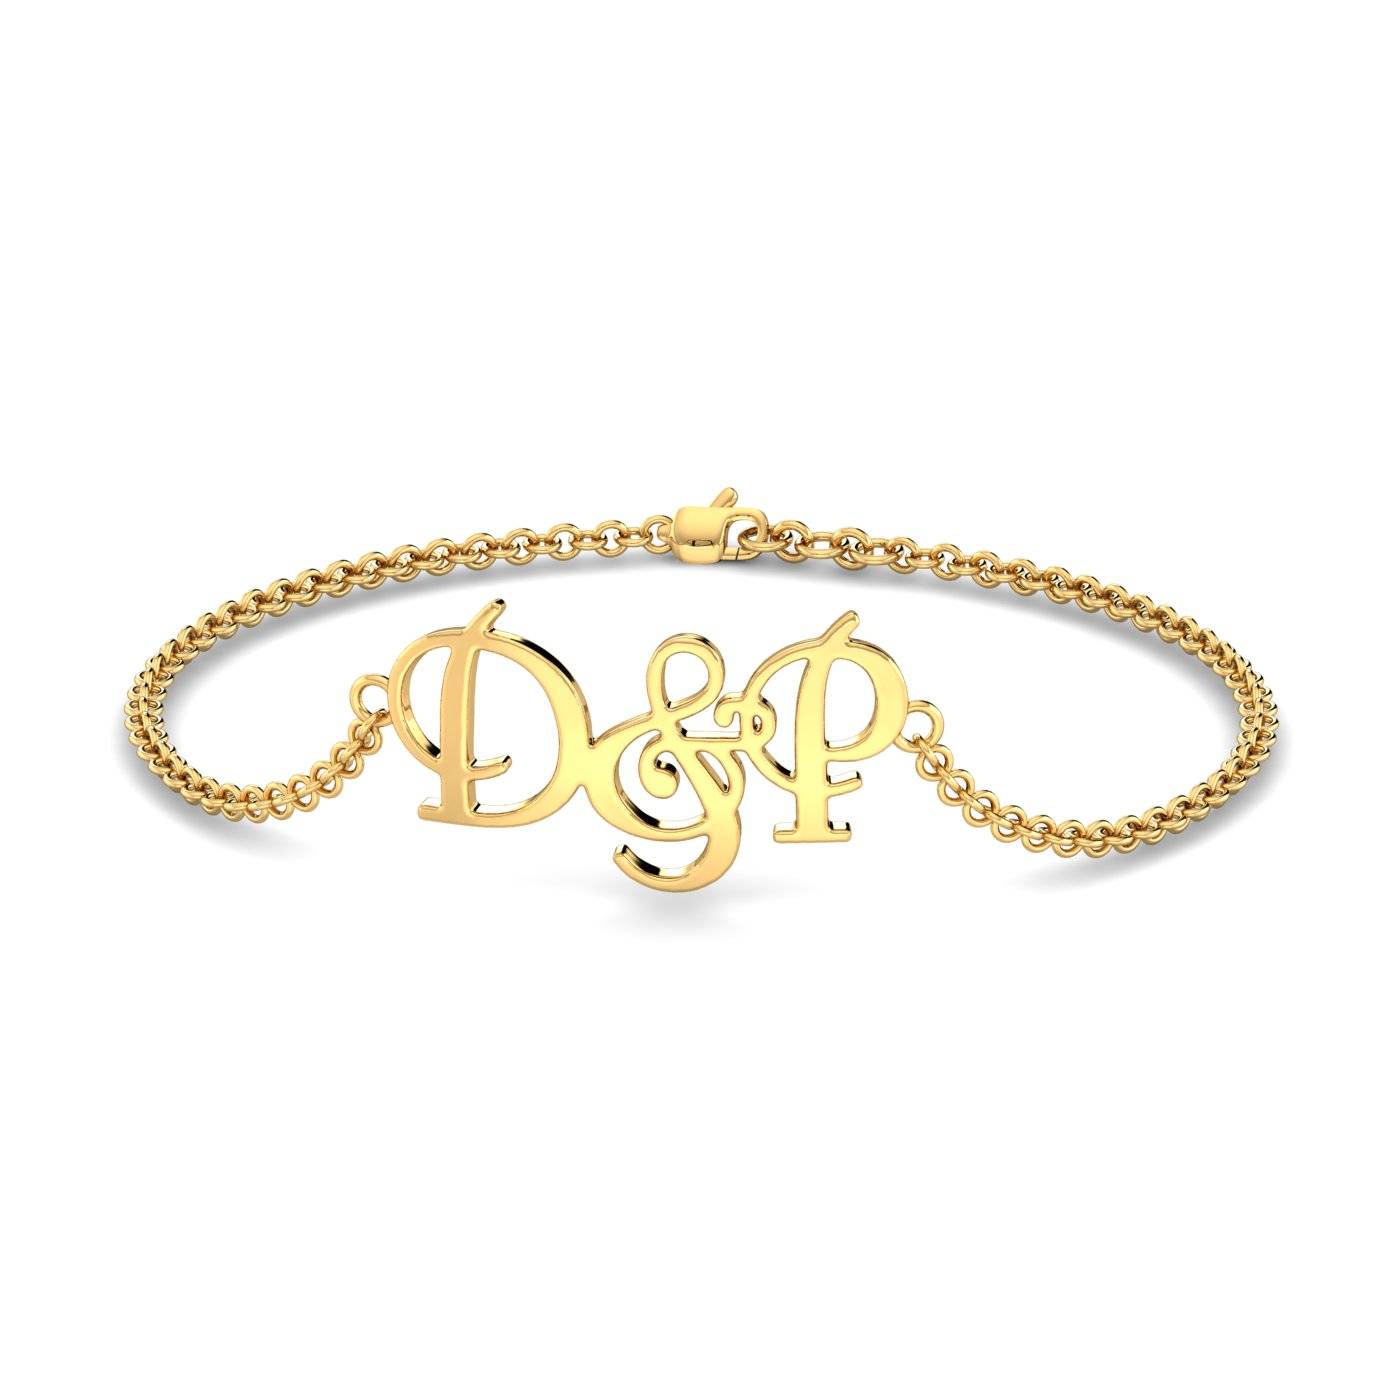 Initials D&P Chain Bracelet